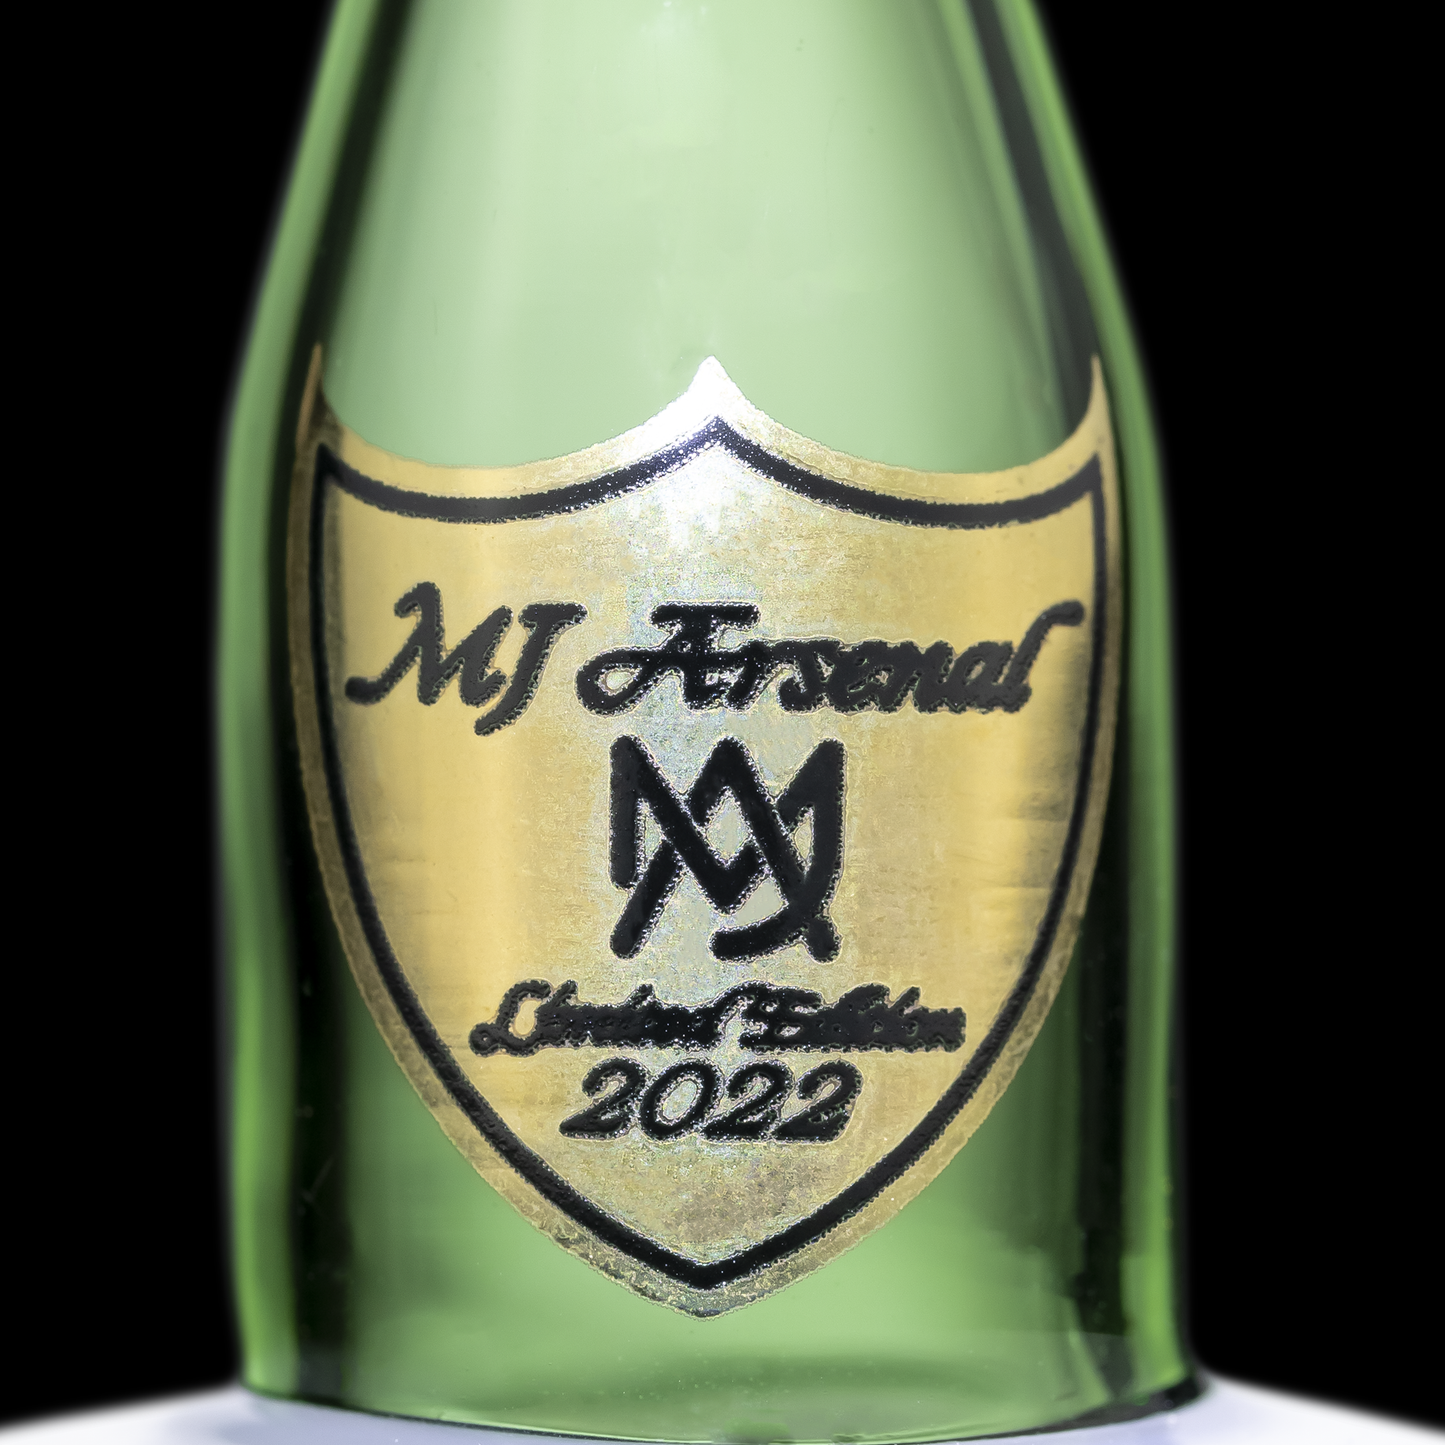 MJA Champagne Bottle Spinner Cap - LE